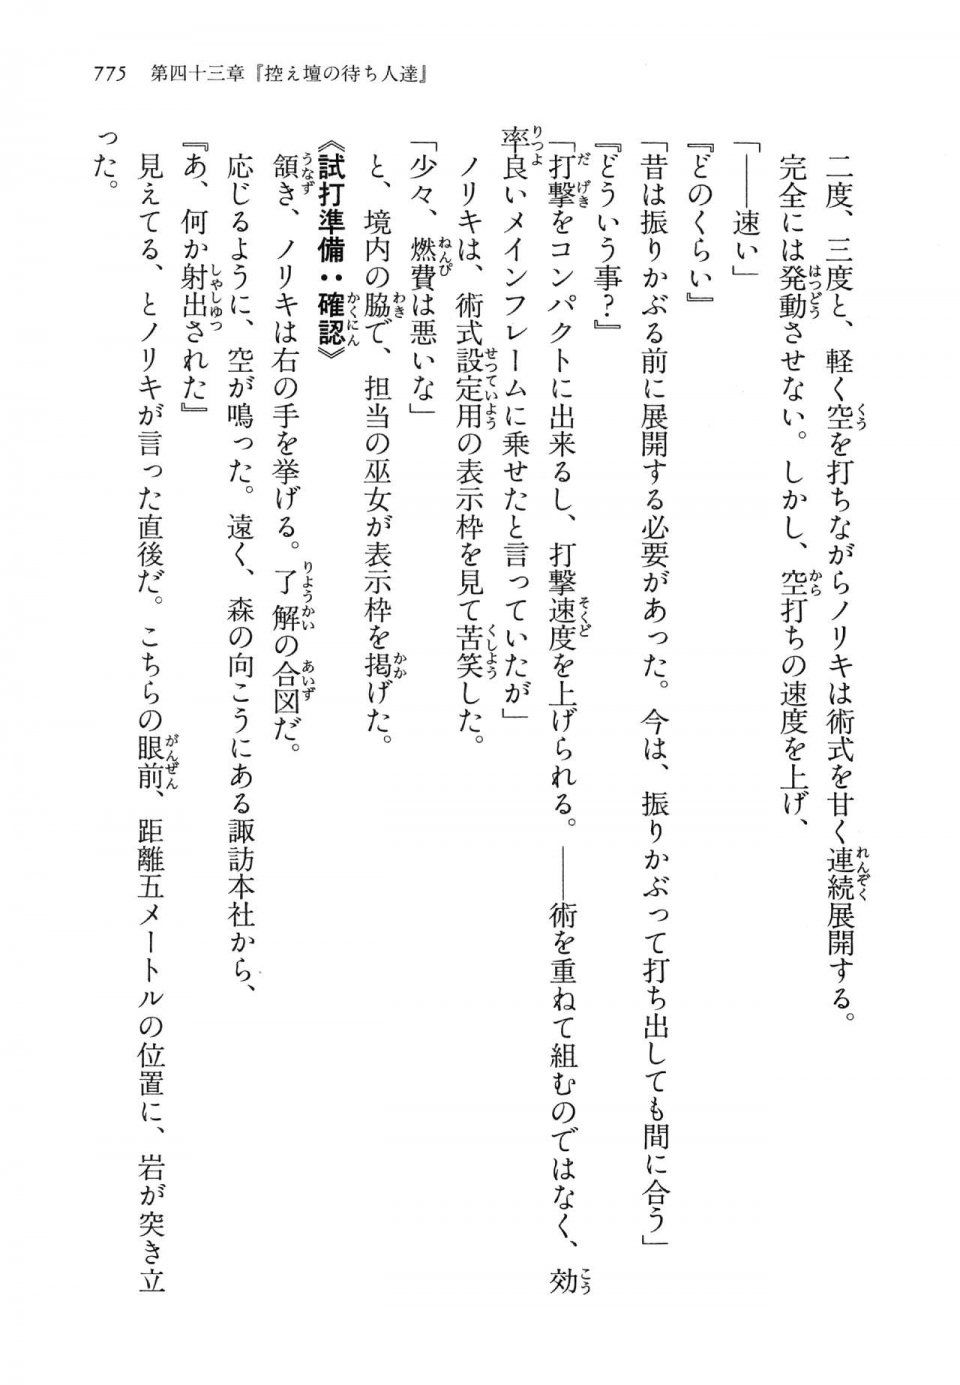 Kyoukai Senjou no Horizon LN Vol 14(6B) - Photo #775